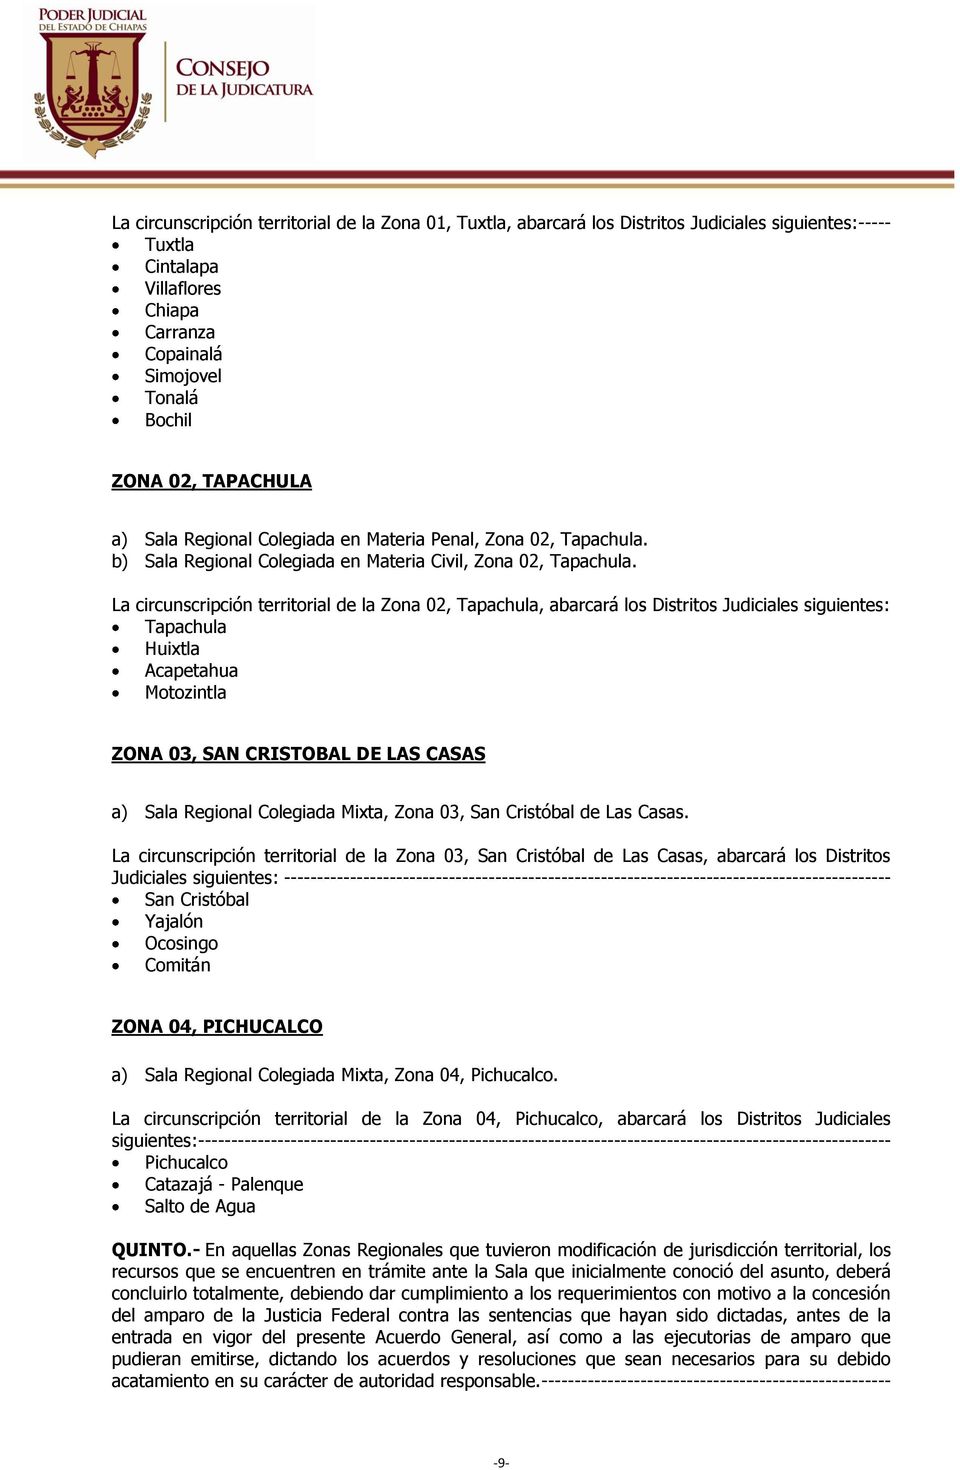 La circunscripción territorial de la Zona 02, Tapachula, abarcará los Distritos Judiciales siguientes: Tapachula Huixtla Acapetahua Motozintla ZONA 03, SAN CRISTOBAL DE LAS CASAS a) Sala Regional